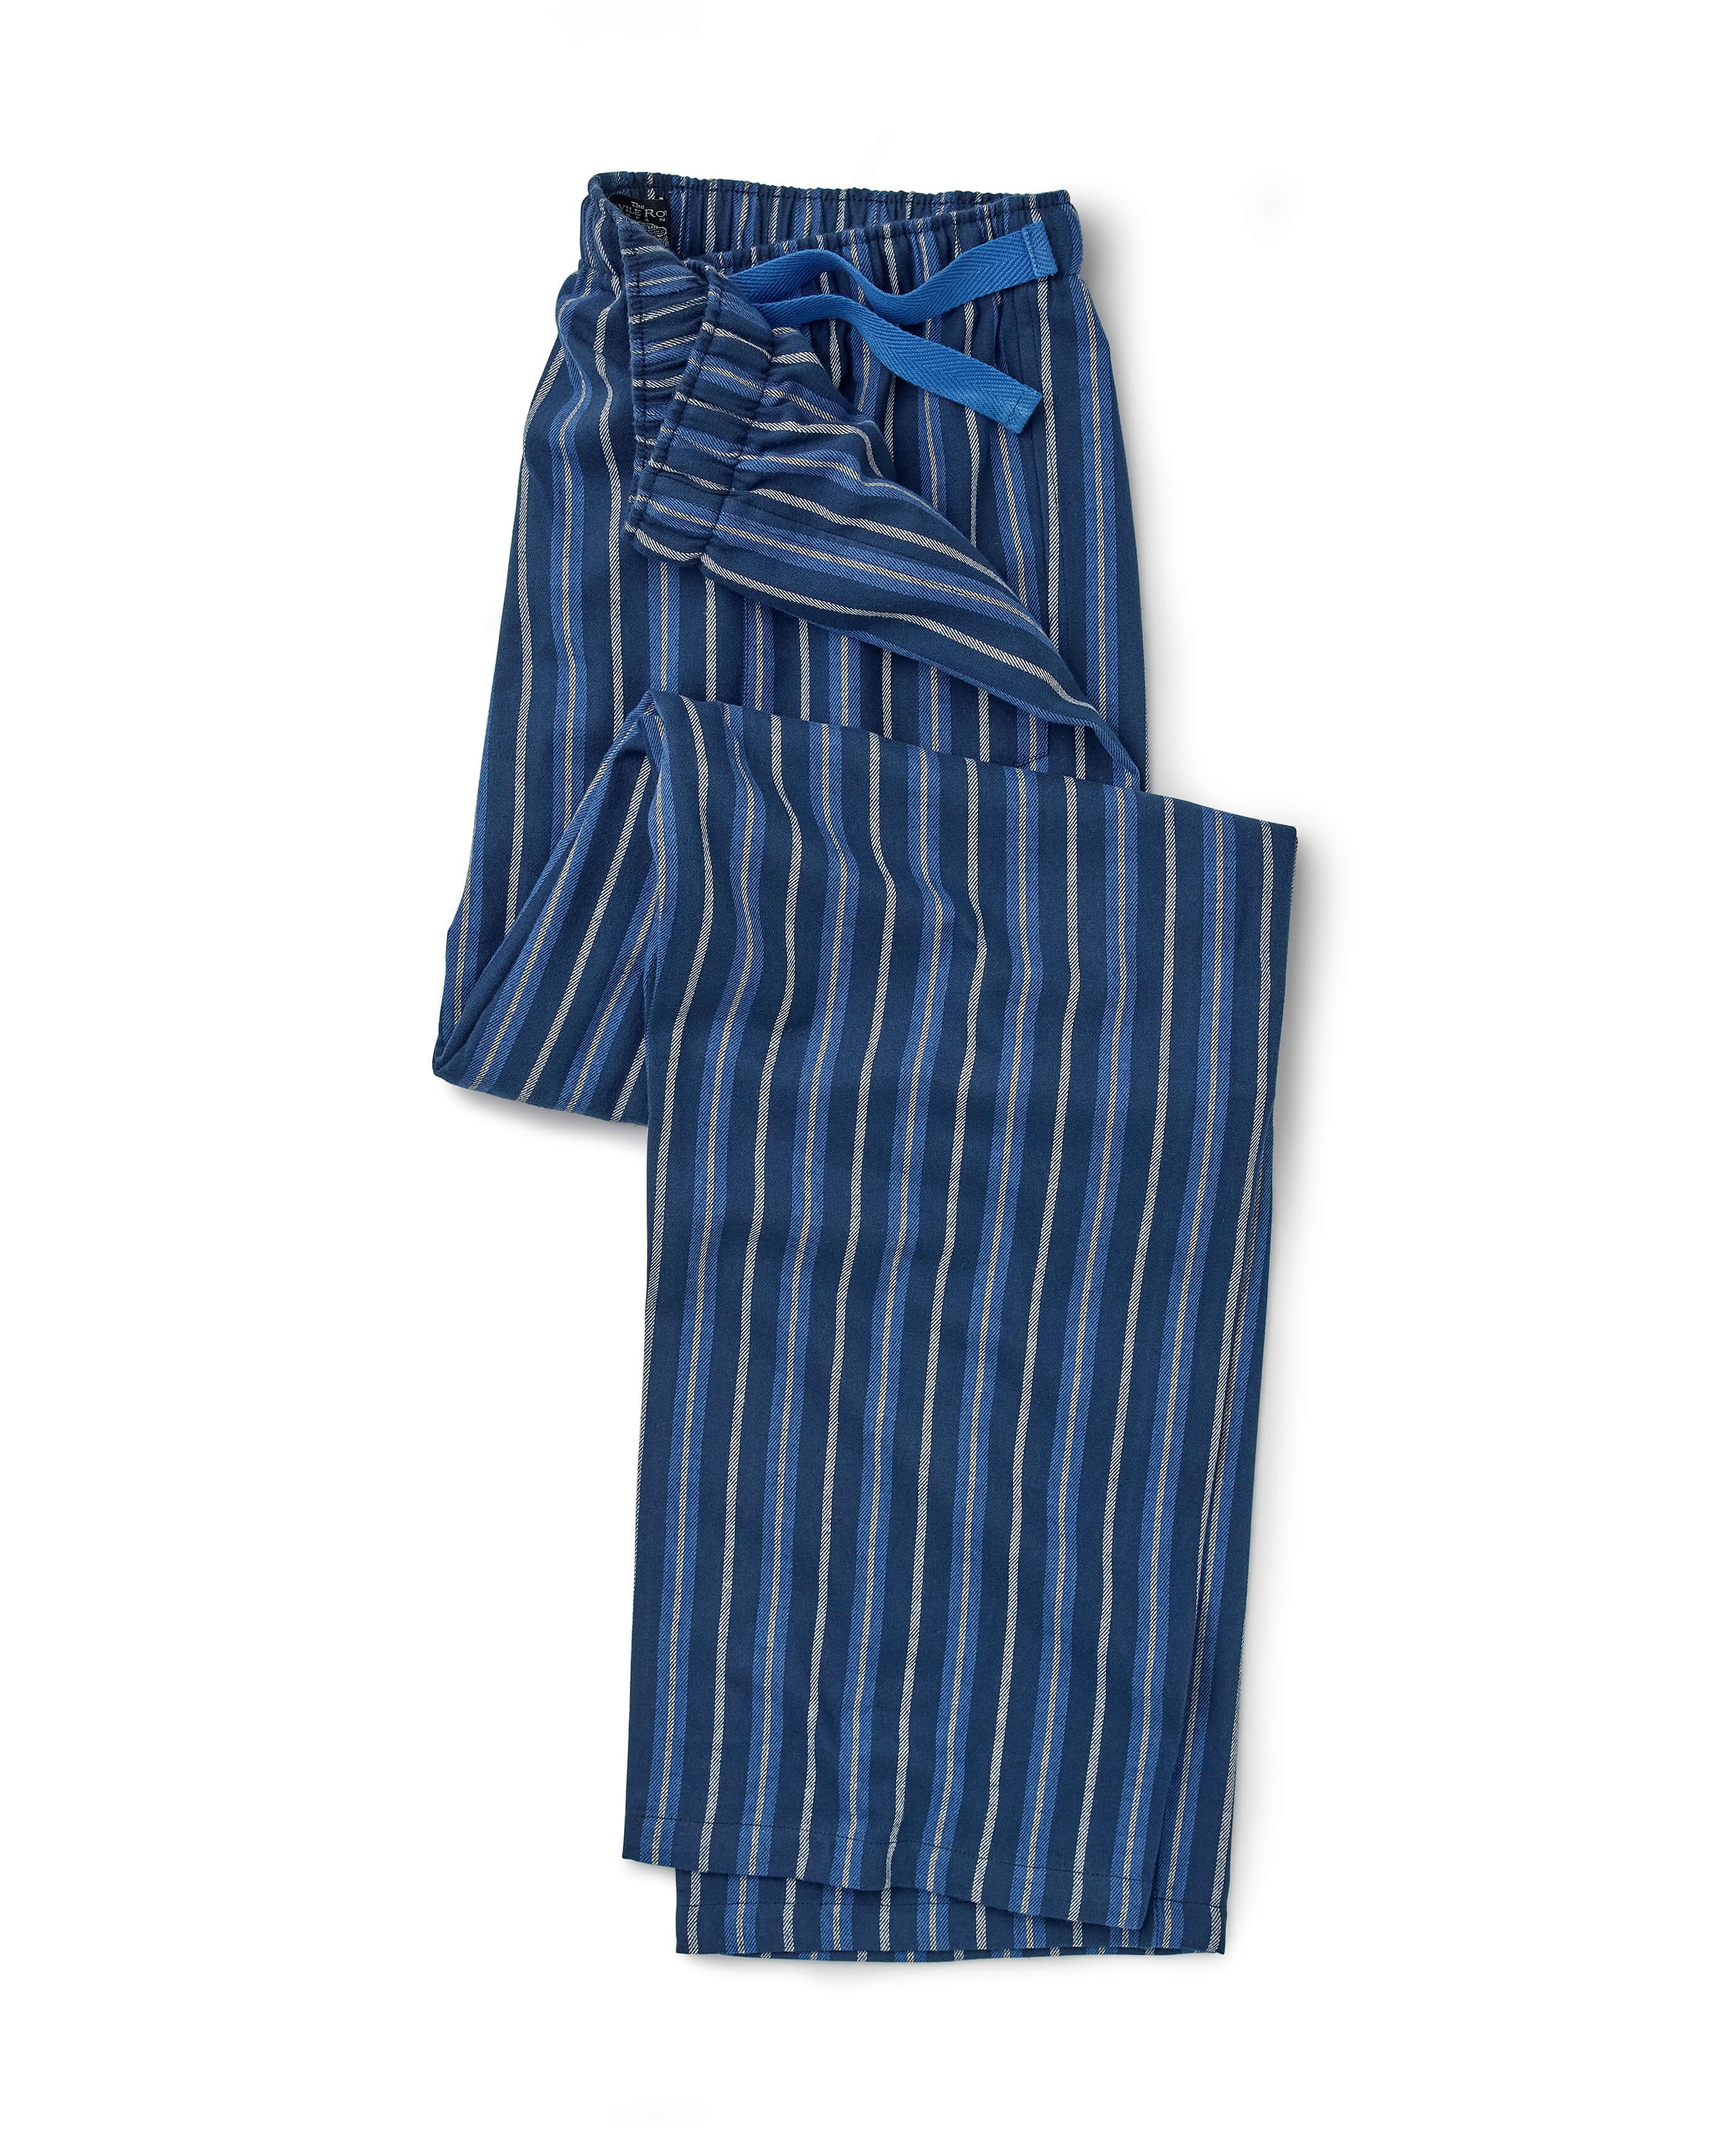 Regular Fit Pajama Pants - Blue/white striped - Men